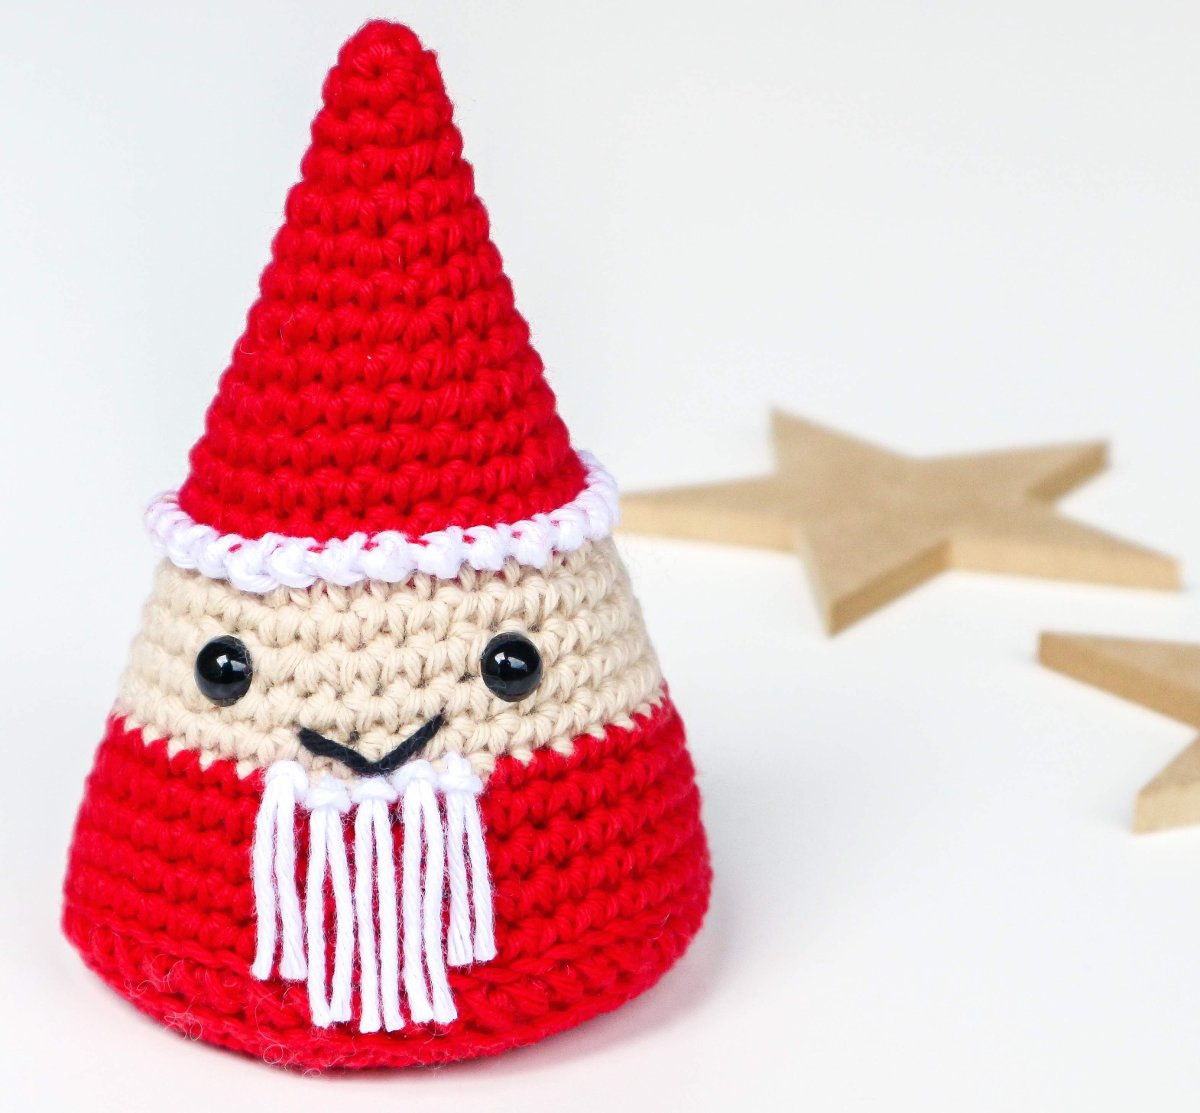 Santa decorations - cute Amigurumi Santa